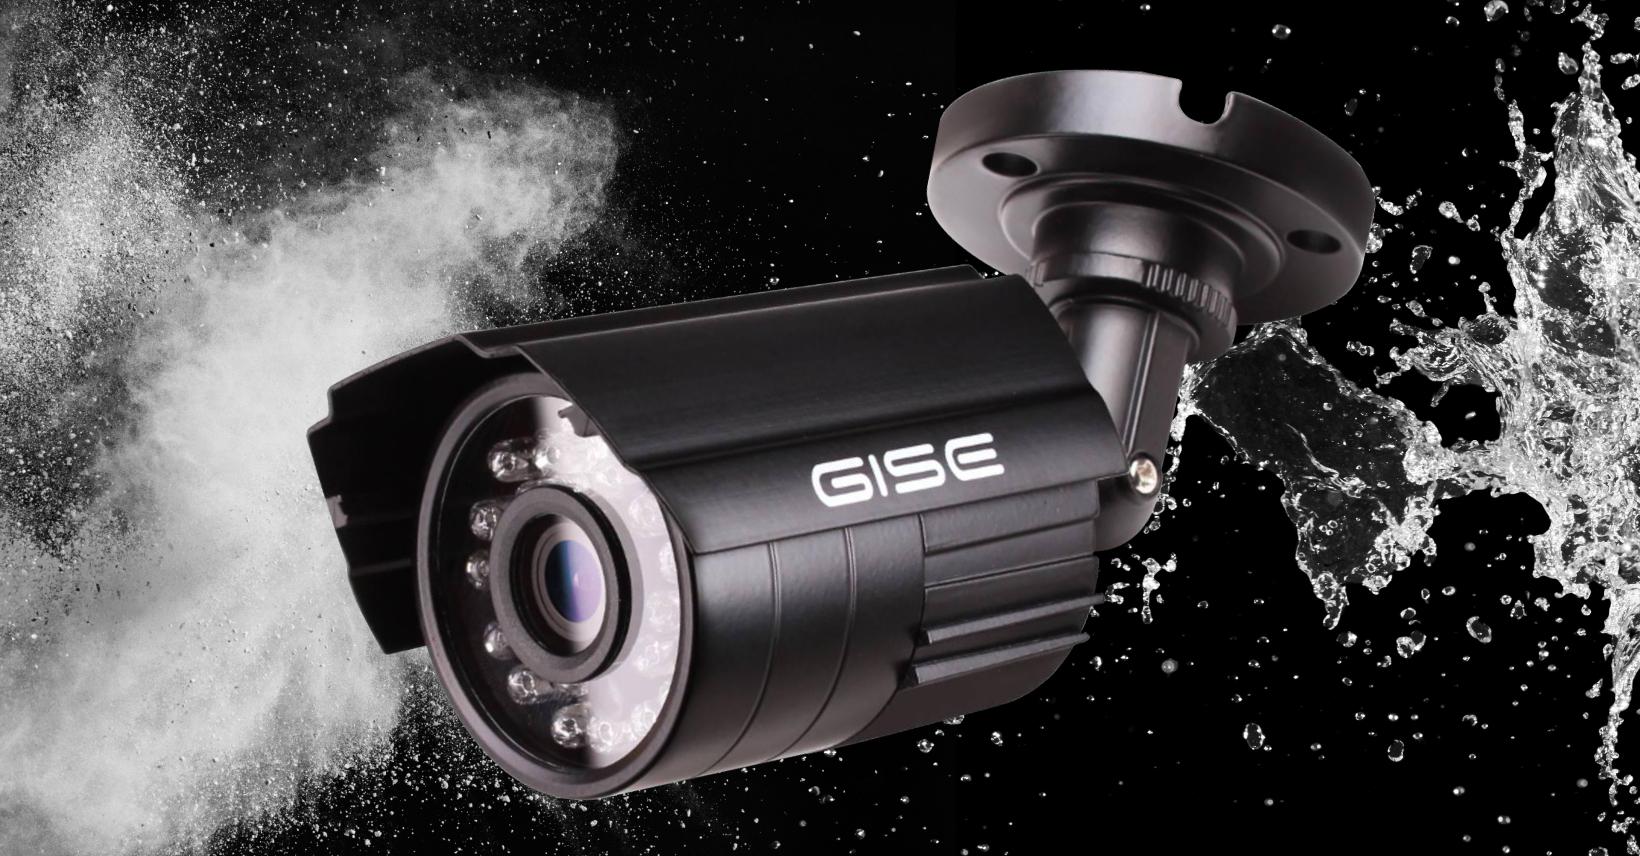 KAMERA 4w1 GISE GS-CM45-V3 5MPx - specyfikacja i dane techniczne: